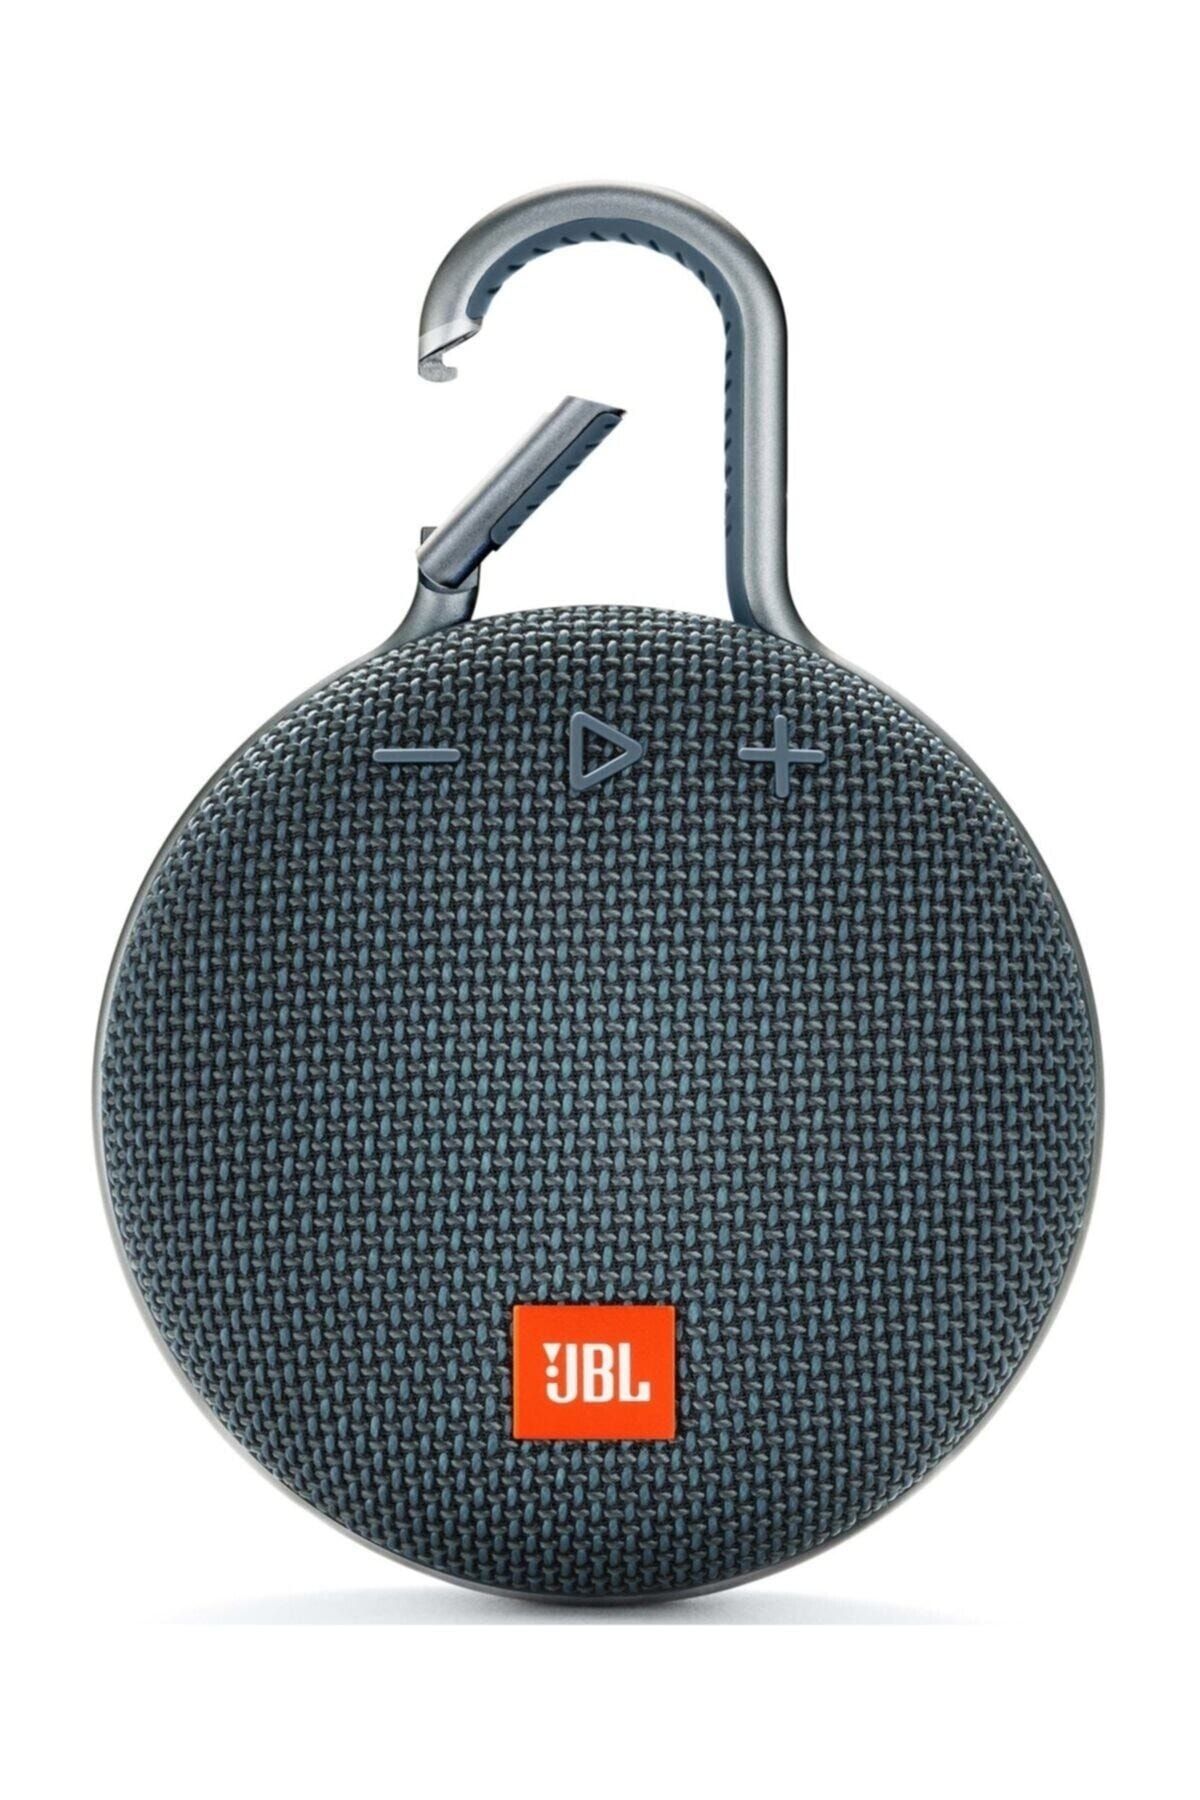 JBL Clip3 Mavi Ipx7 Su Geçirmez Taşınabilir Bluetooth Hoparlör